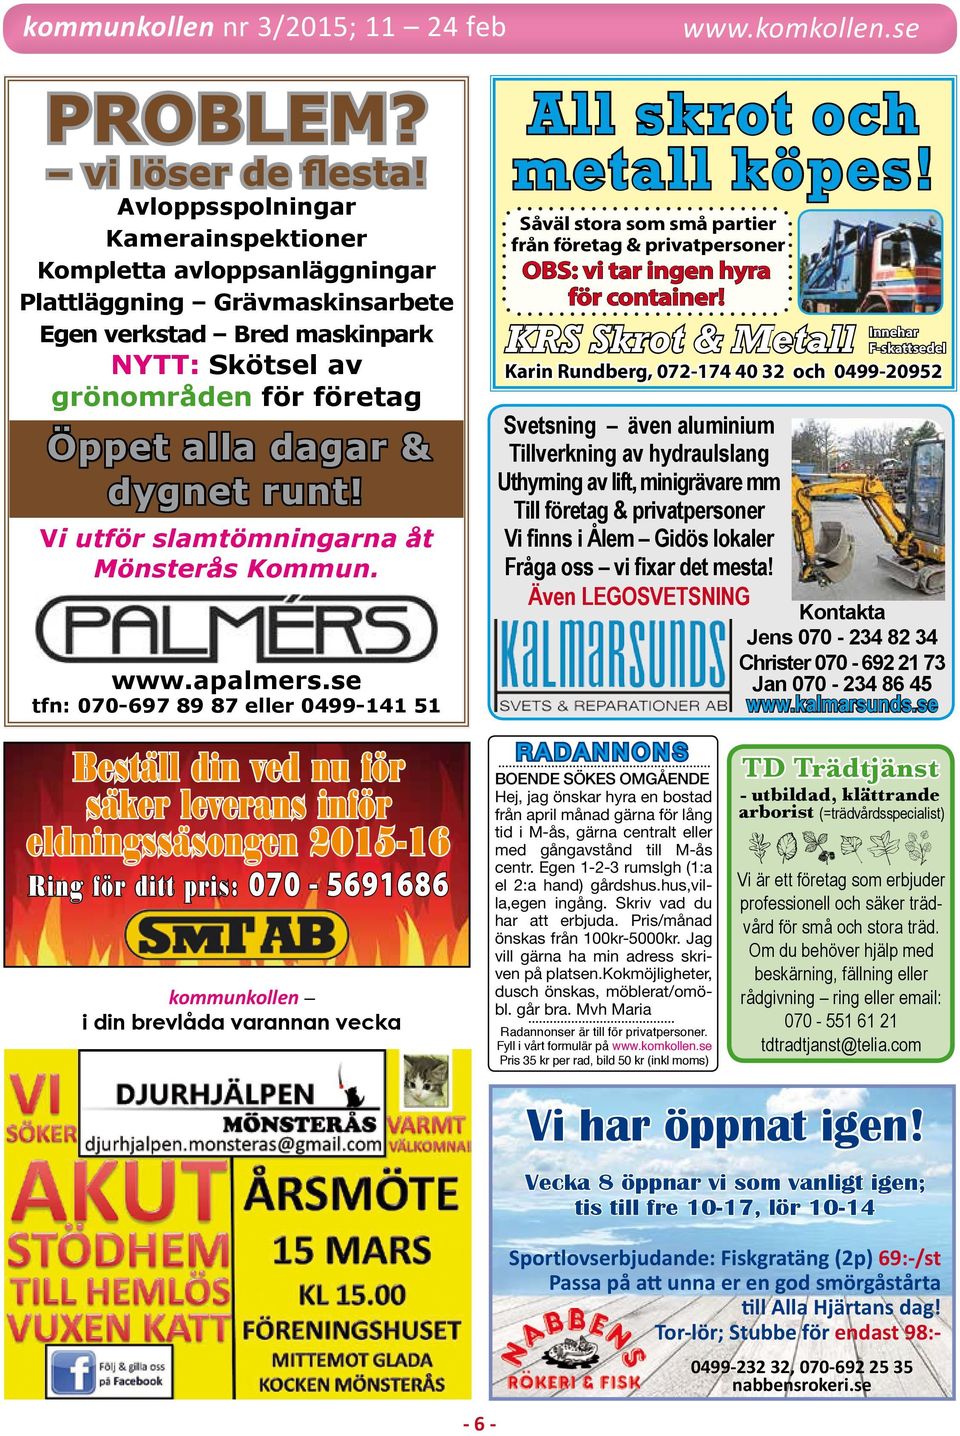 runt! Vi utför slamtömningarna åt Mönsterås Kommun. www.apalmers.se tfn: 070-697 89 87 eller 0499-141 51 All skrot och metall köpes!